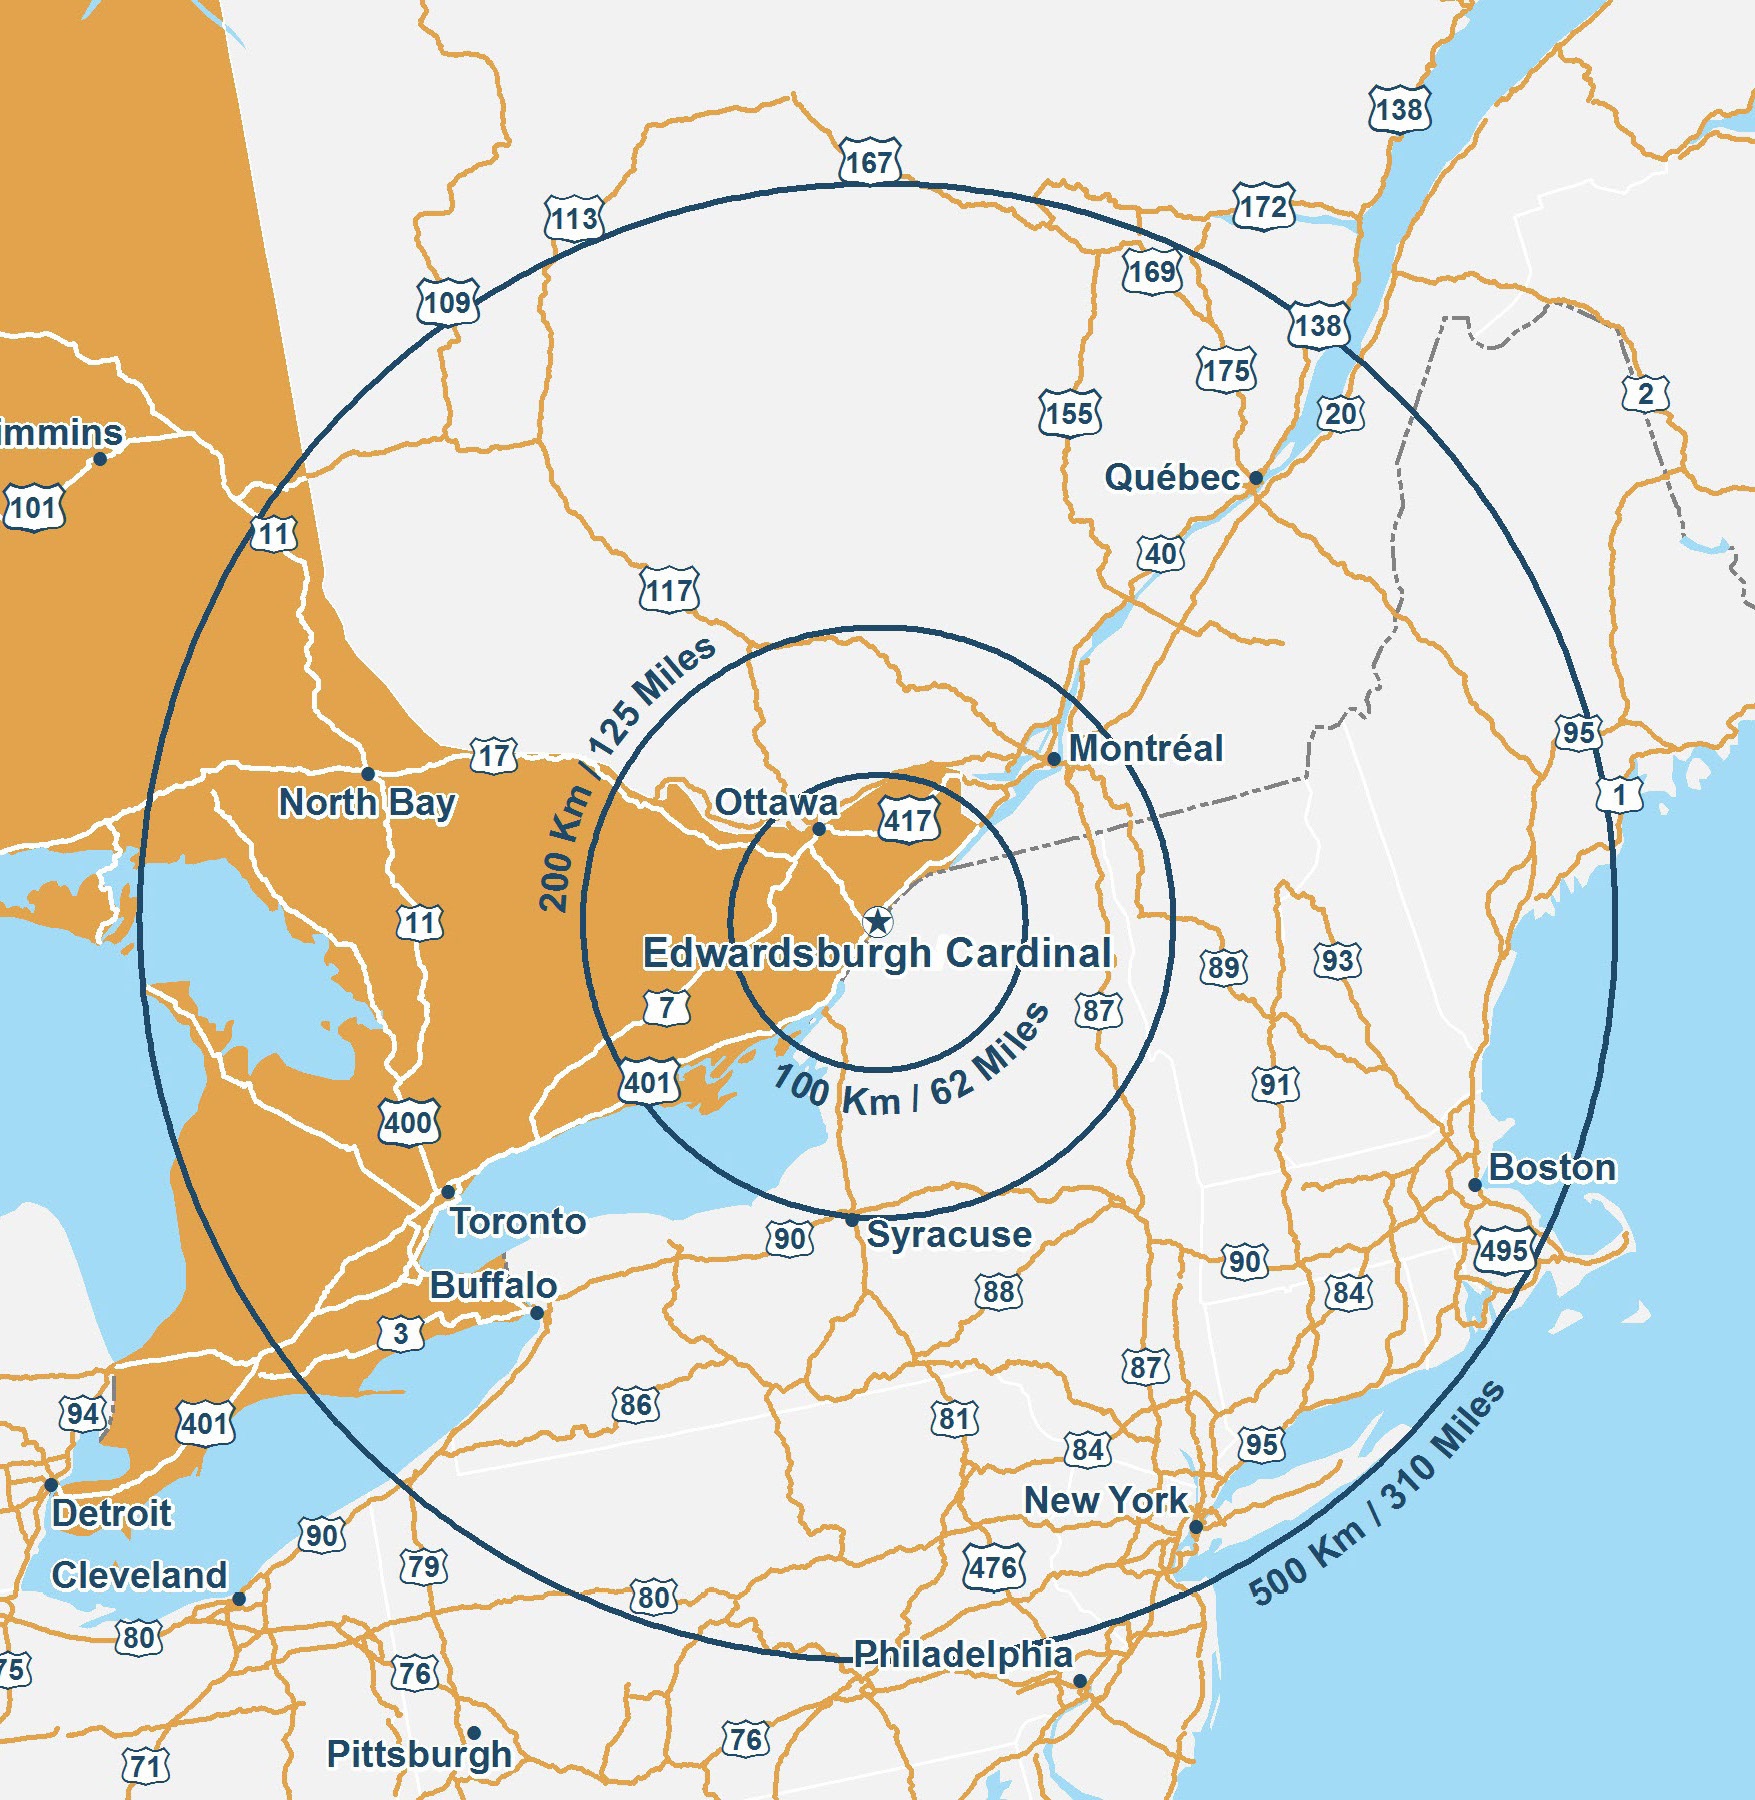 Carte de l’Ontario montrant l’emplacement d’Edwardsburgh Cardinal en relation avec les villes majeures situées aux alentours sur un rayon de 100 km/62 Miles, 200 km/125 Miles, et 500 km/310 Miles. La ville d’Ottawa est située dans un rayon de 100 km/62 Miles. La ville de Montréal est située dans un rayon de 200 km/125 Miles. Les villes de North Bay, Toronto, Buffalo, Syracuse, Boston et Québec sont dans un rayon de 500 km/310 Miles. Les villes de Philadelphie, Pittsburgh, Détroit et Cleveland sont au-delà de 500 km/310 Miles.